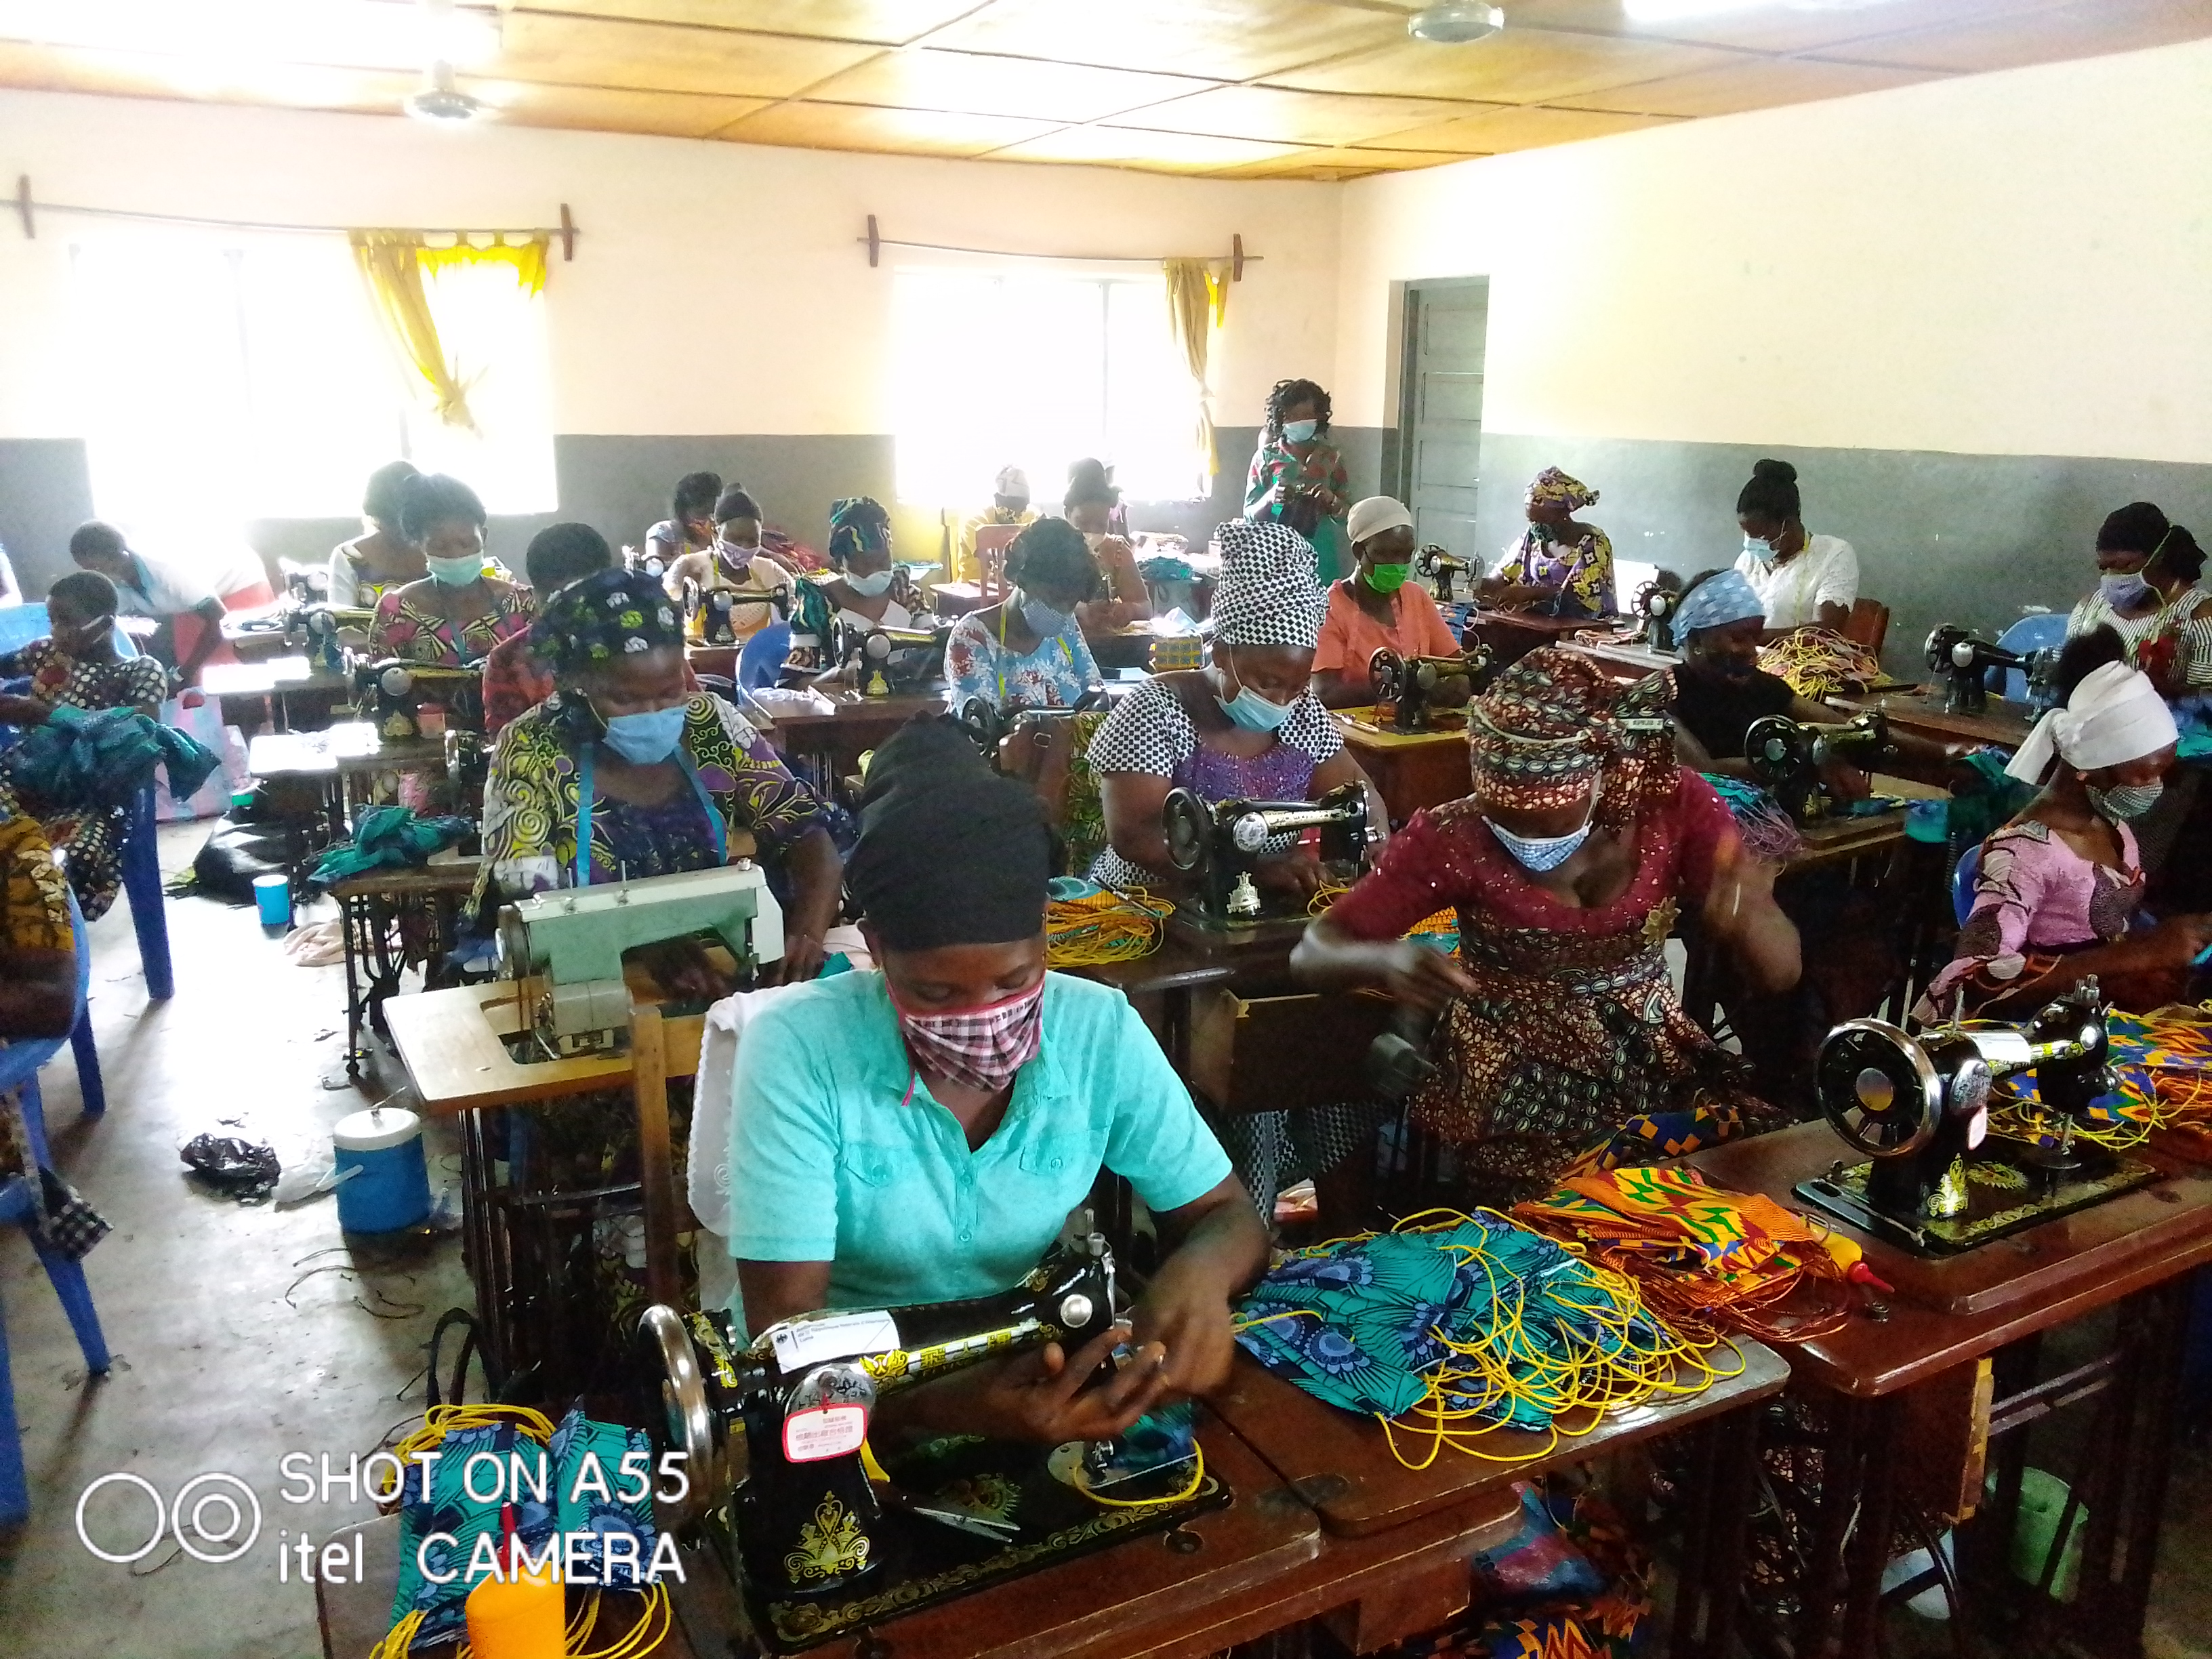 Sokodé/Covid19: Plus de 554.000 masques déjà confectionnés par les artisans de couture de la région centrale. Plus de 400, ils sont plus que jamais engagés à apporter leur contribution au renforcement de la résilience des populations face à cette pandémie.